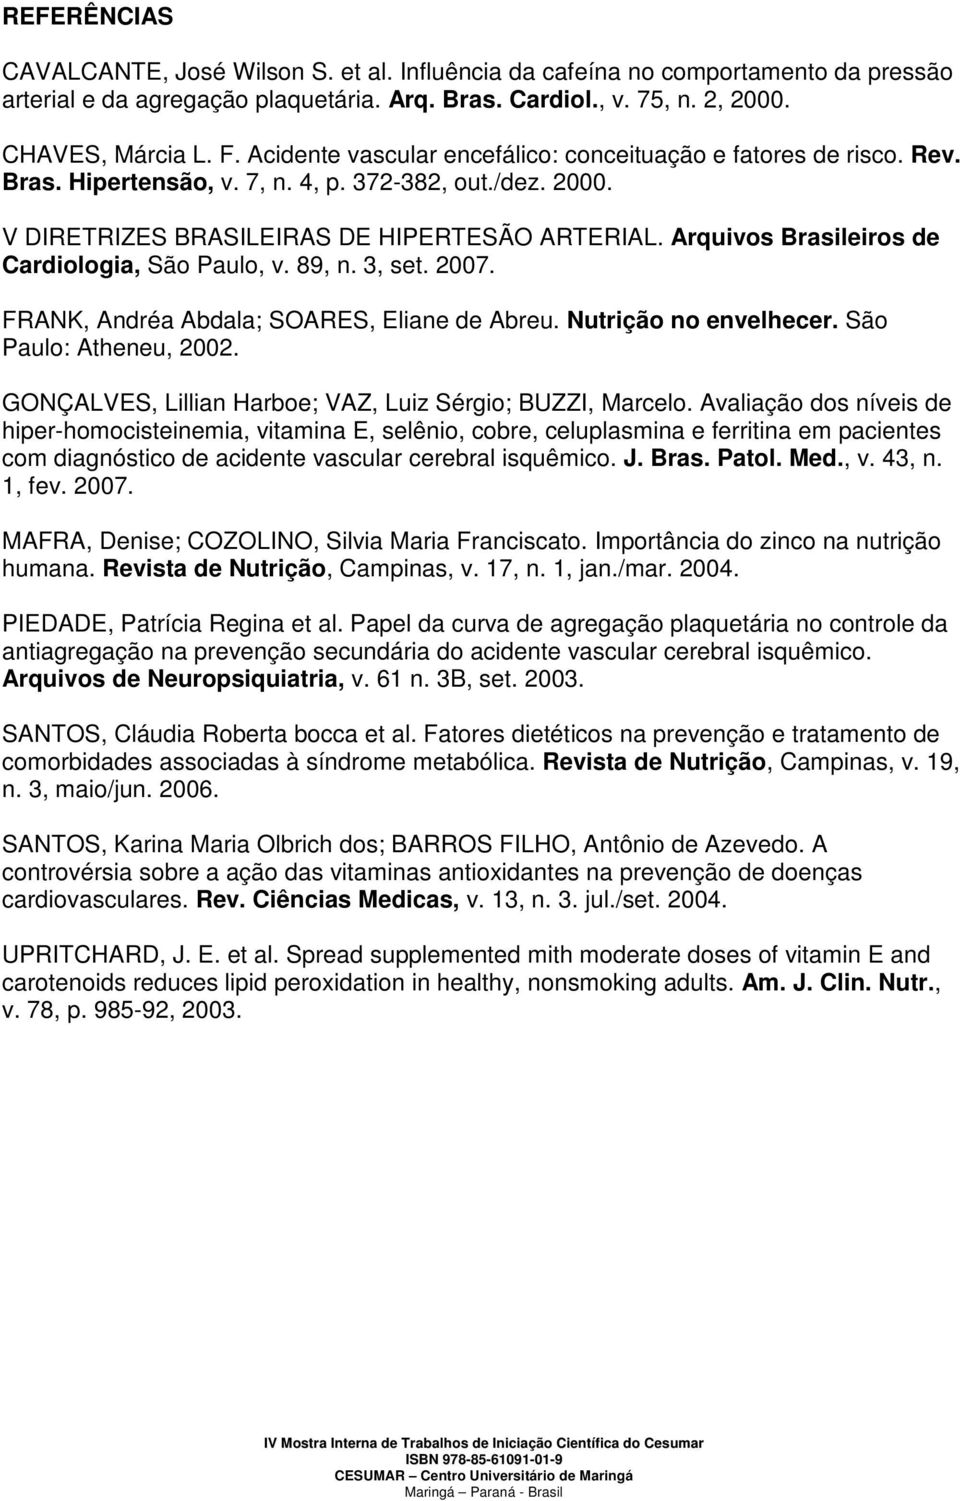 Arquivos Brasileiros de Cardiologia, São Paulo, v. 89, n. 3, set. 2007. FRANK, Andréa Abdala; SOARES, Eliane de Abreu. Nutrição no envelhecer. São Paulo: Atheneu, 2002.